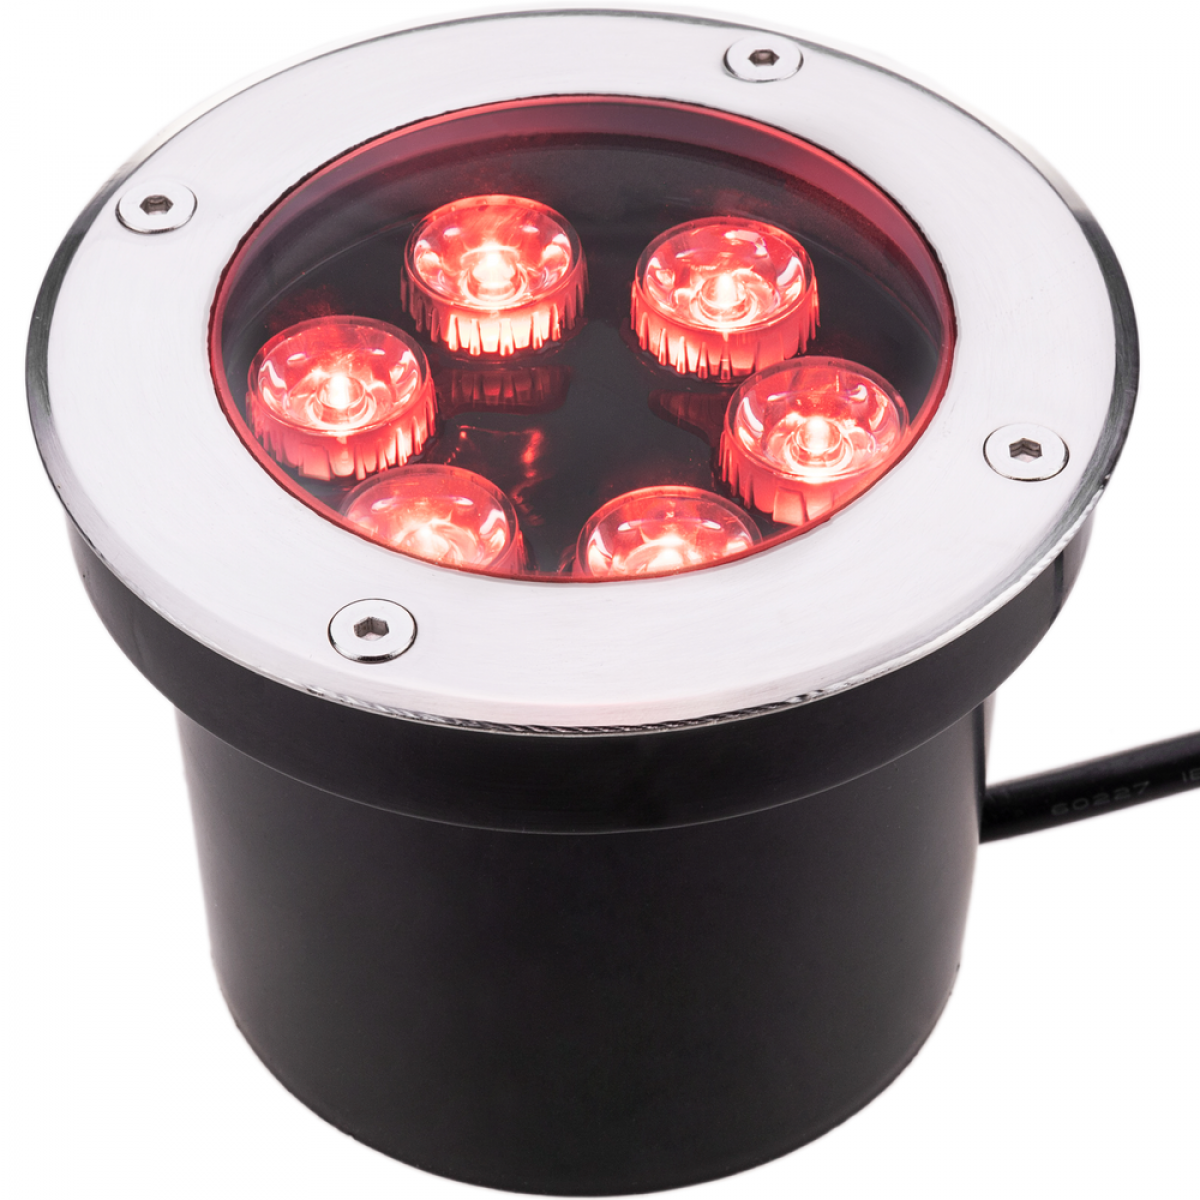 Bematik - Spot LED 6W 120mm avec lumière rouge - Effets à LED